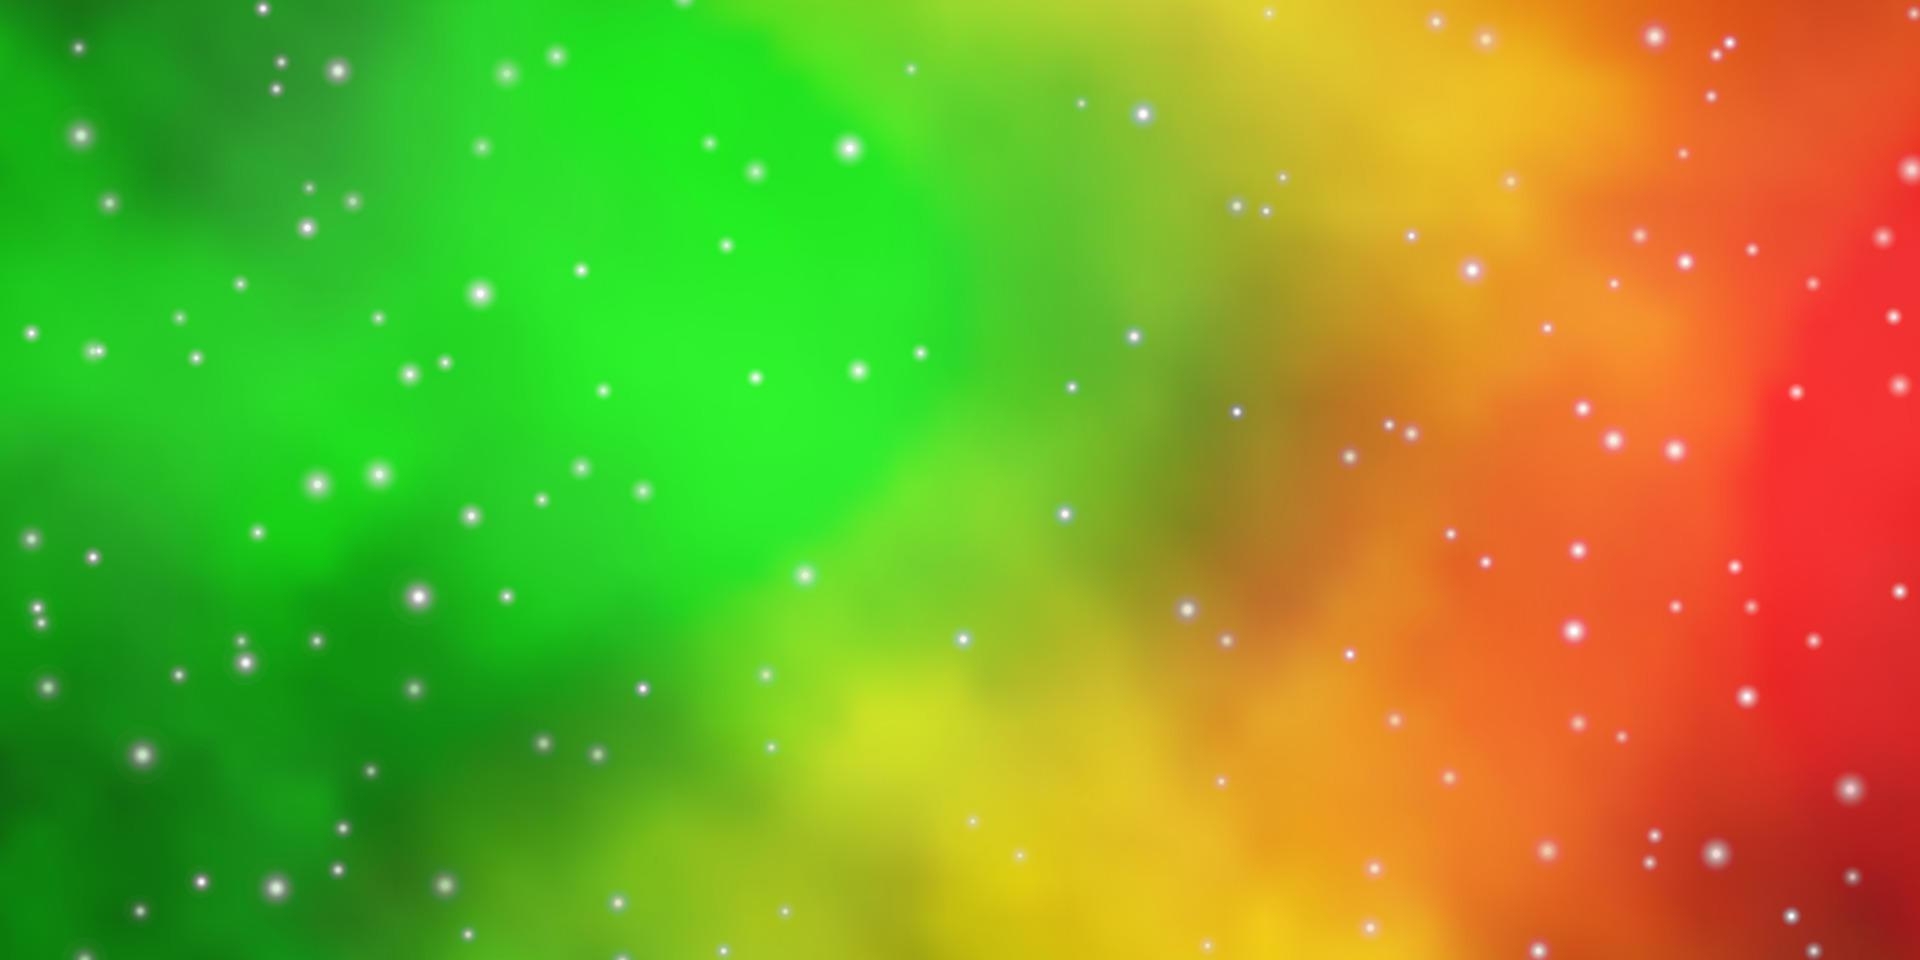 sfondo vettoriale verde scuro, giallo con stelle piccole e grandi.